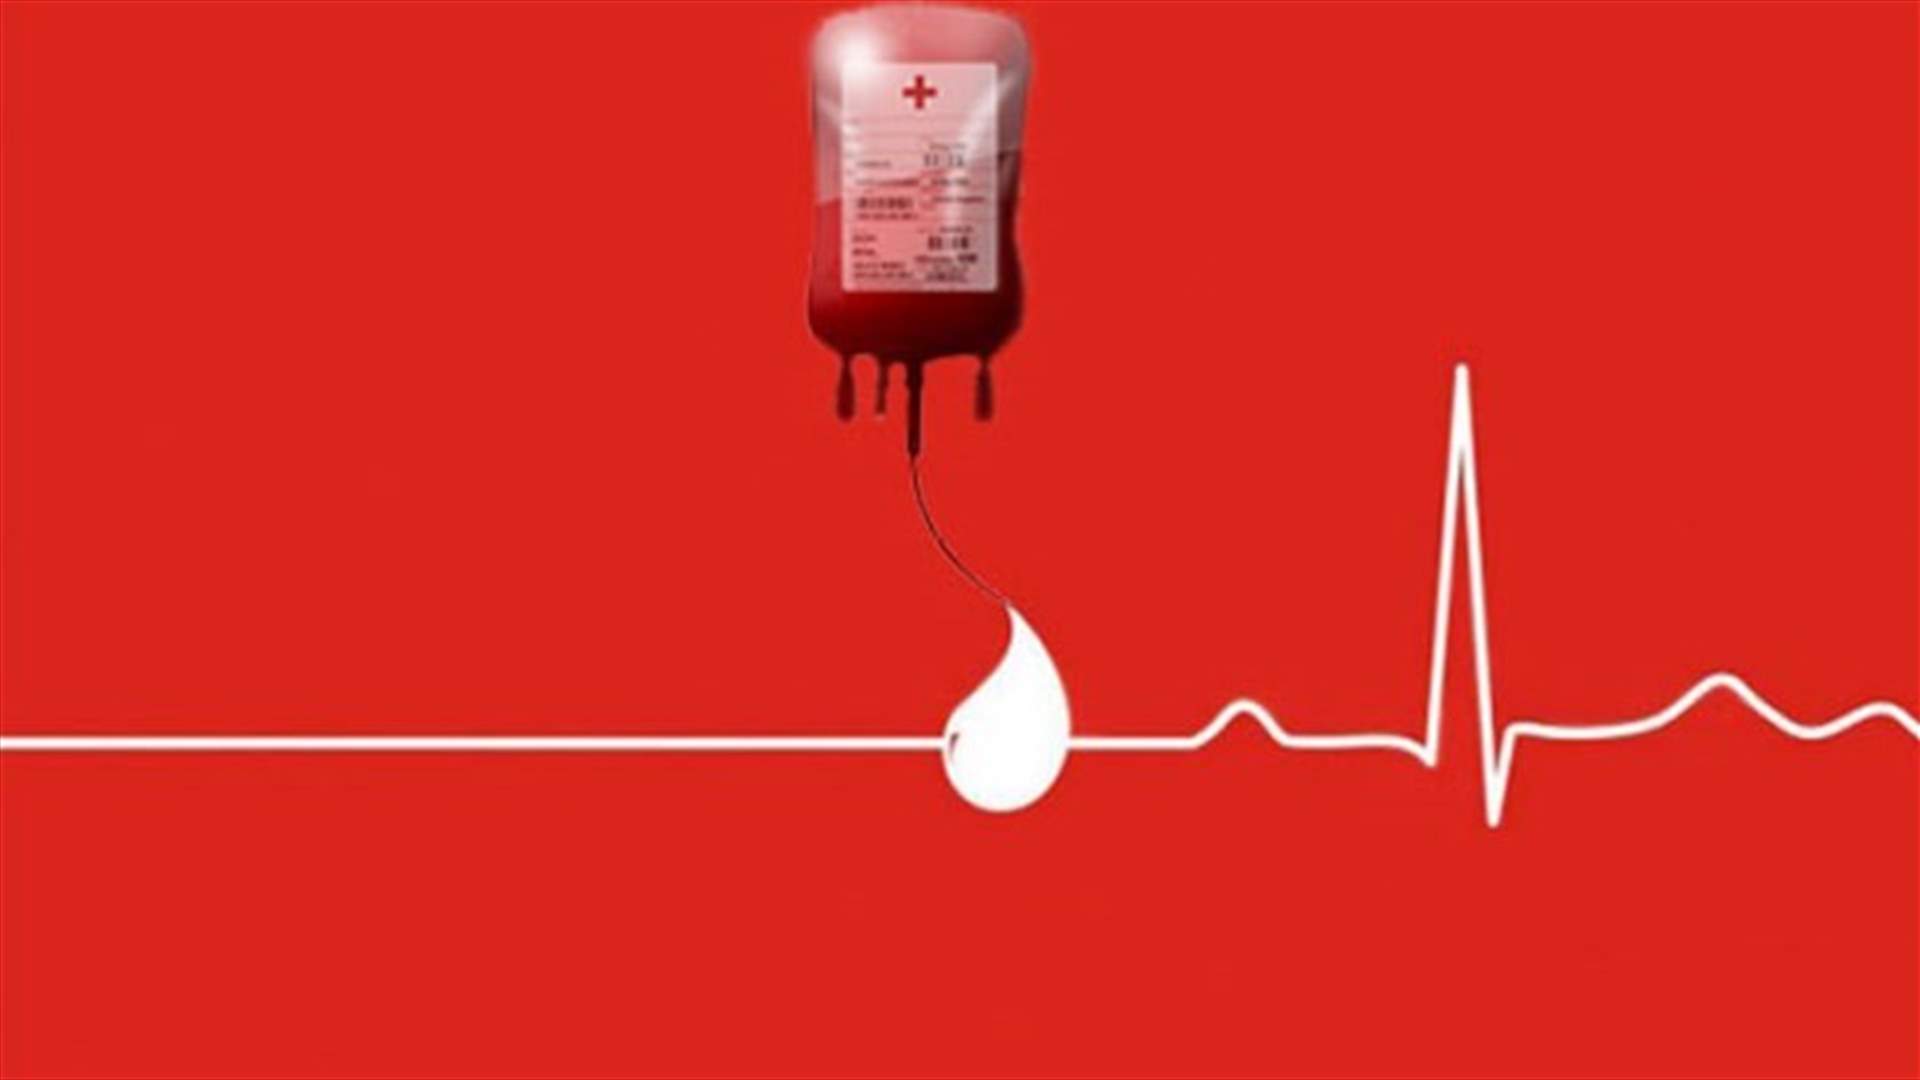 مريض في مستشفى الروم بحاجة ماسة إلى 5 وحدات دم من فئة O-... للتبرع، الإتصال على: 71537383